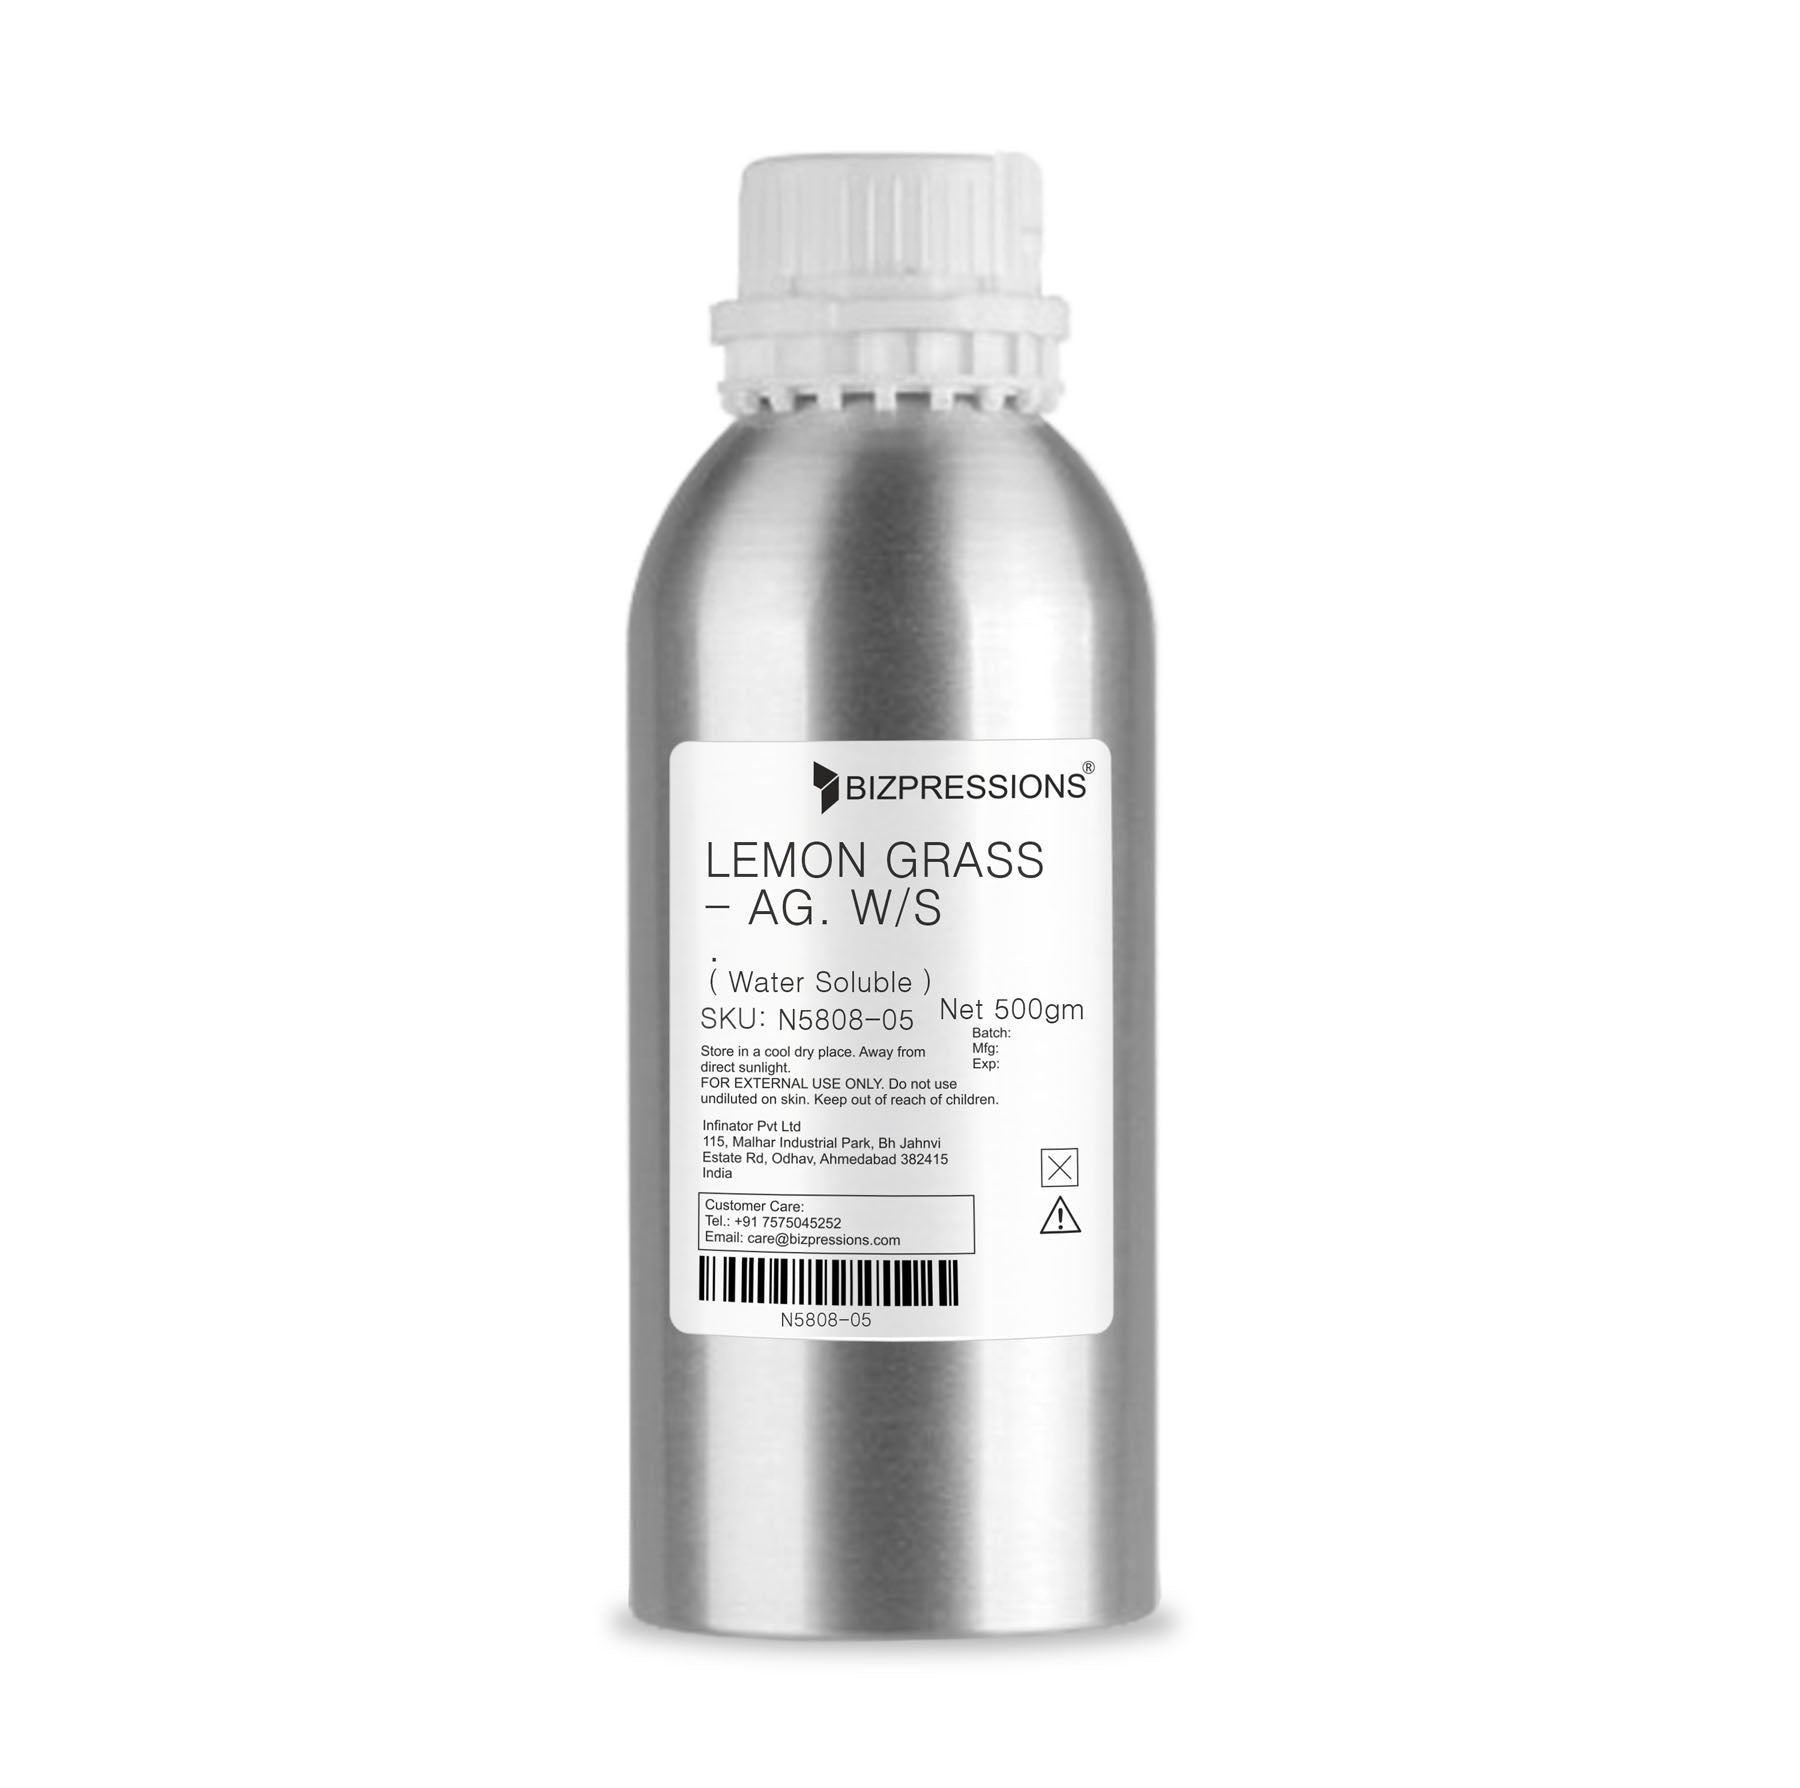 LEMON GRASS - AG. W/S - Fragrance ( Water Soluble ) - 500 gm